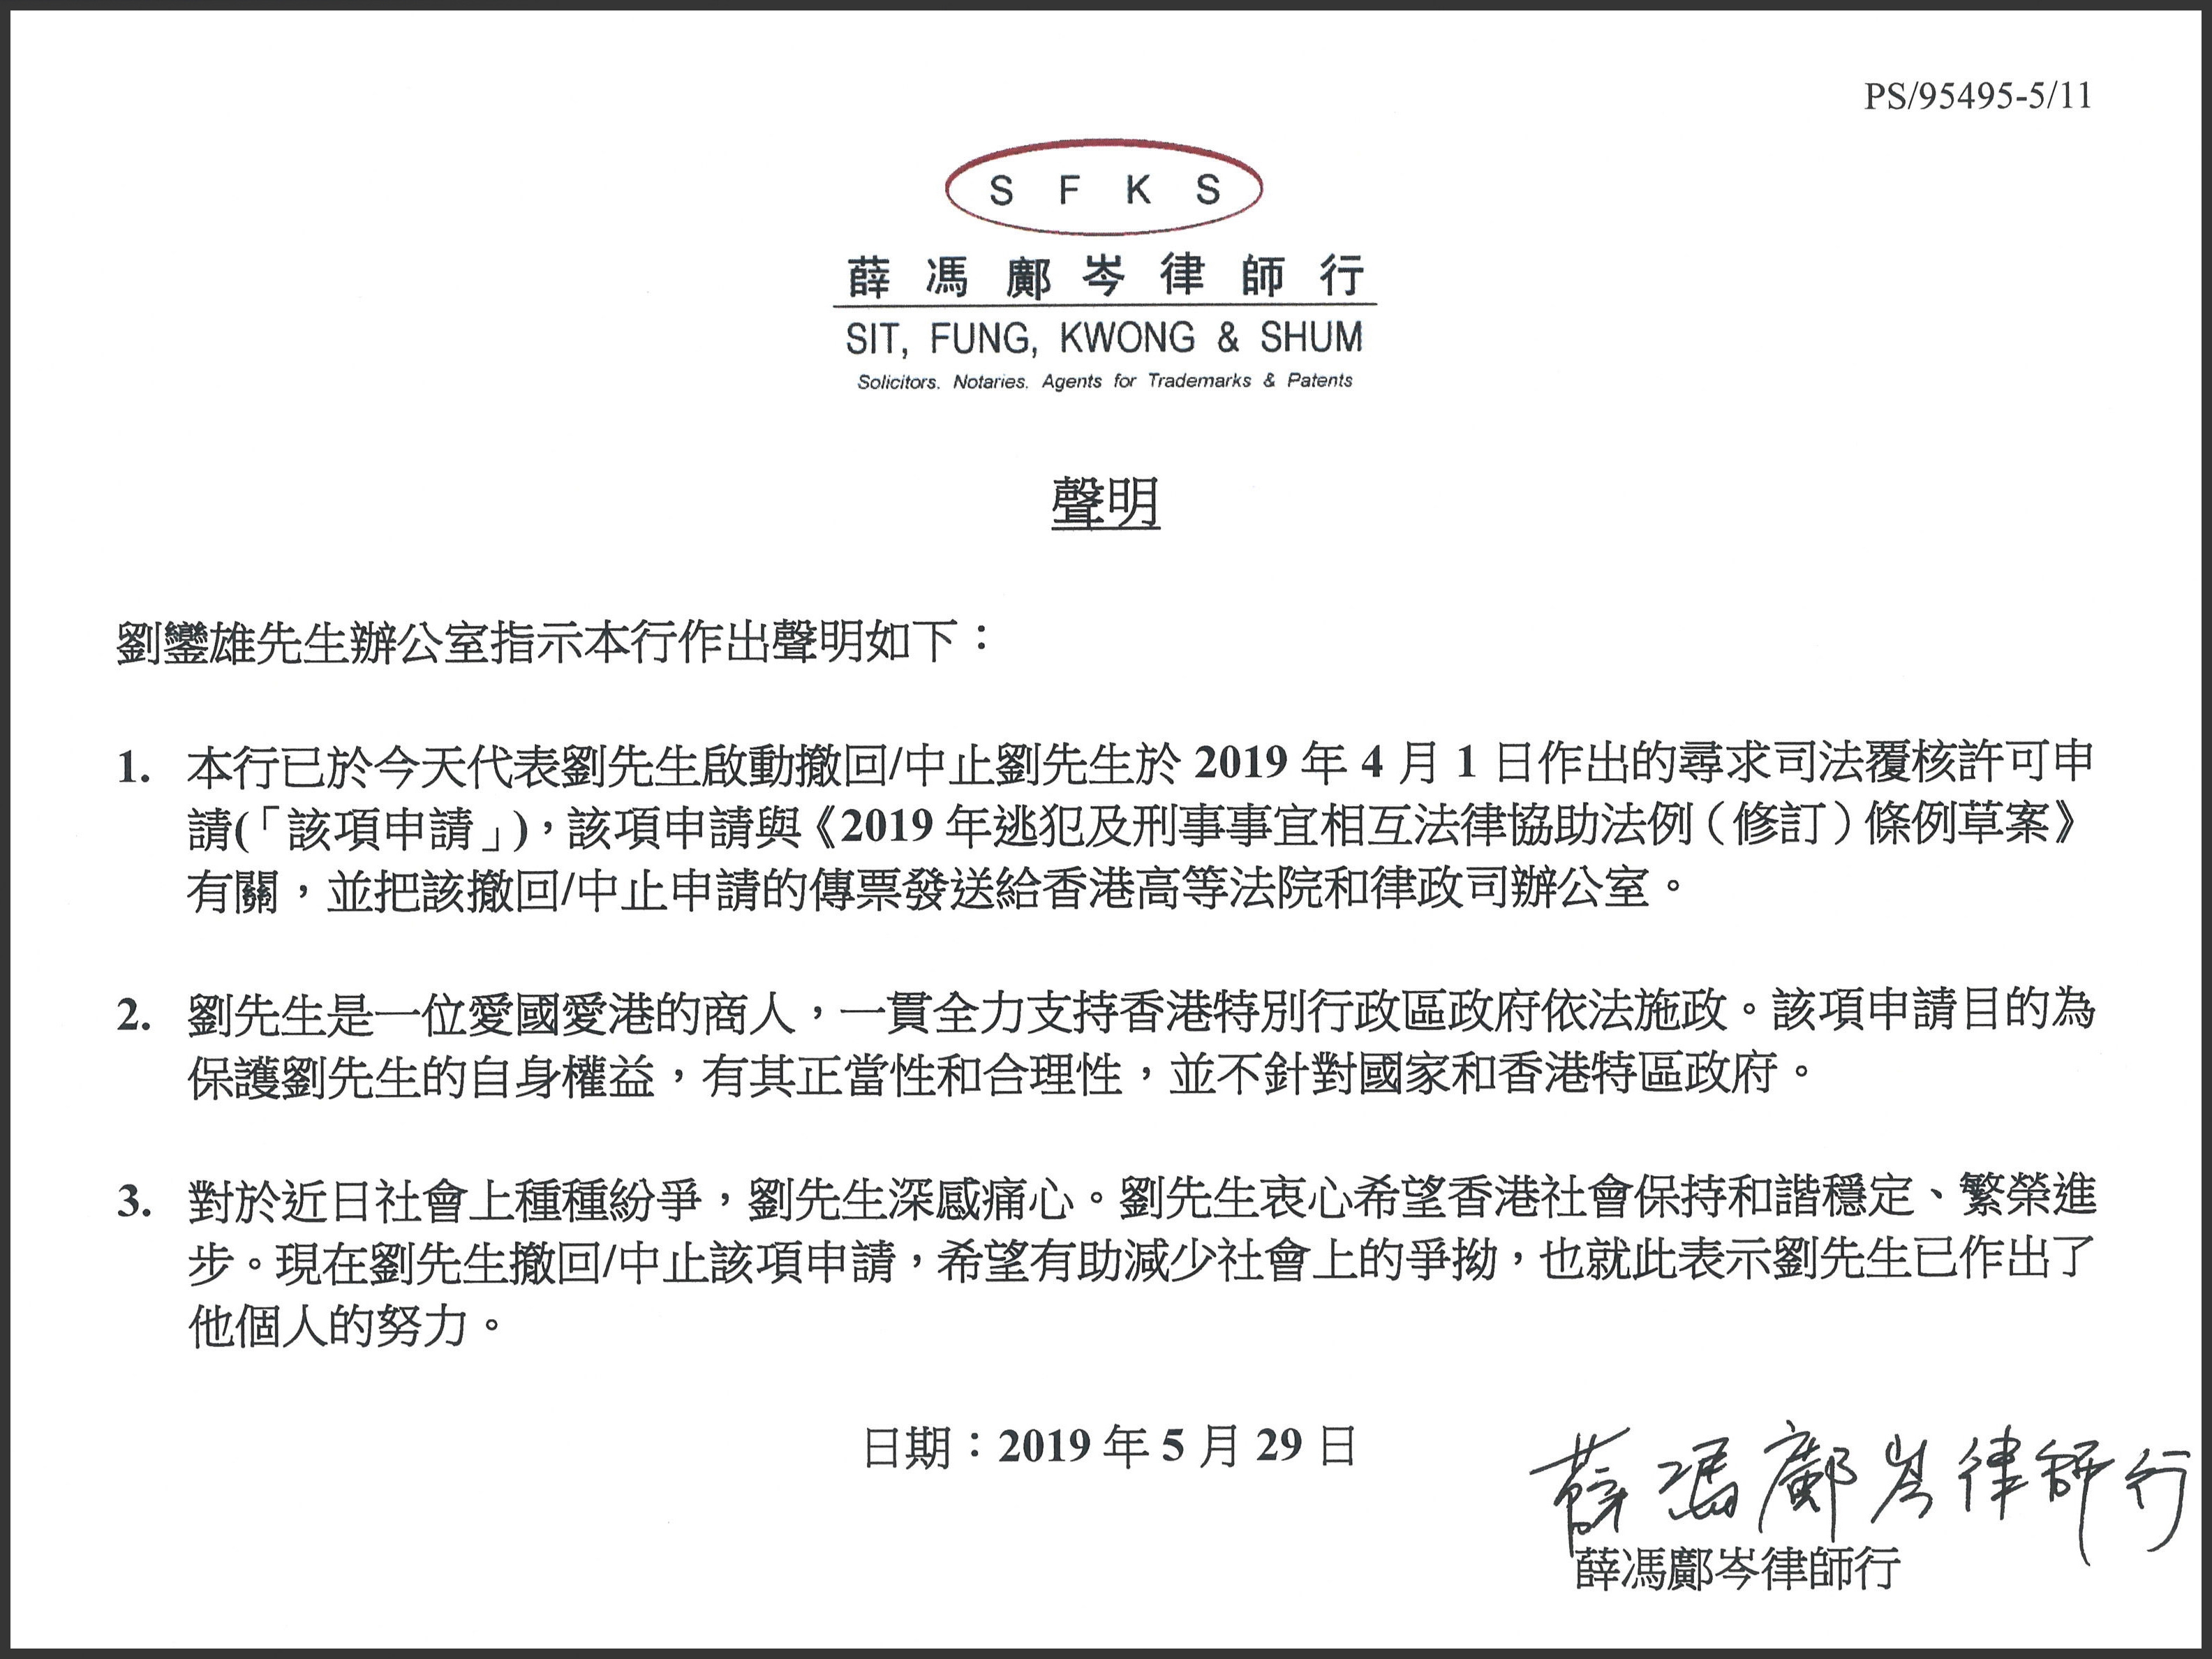 劉鑾雄透過律師行發表聲明表示A撤回就m逃犯條例n的修訂提出司法覆核許可申請C